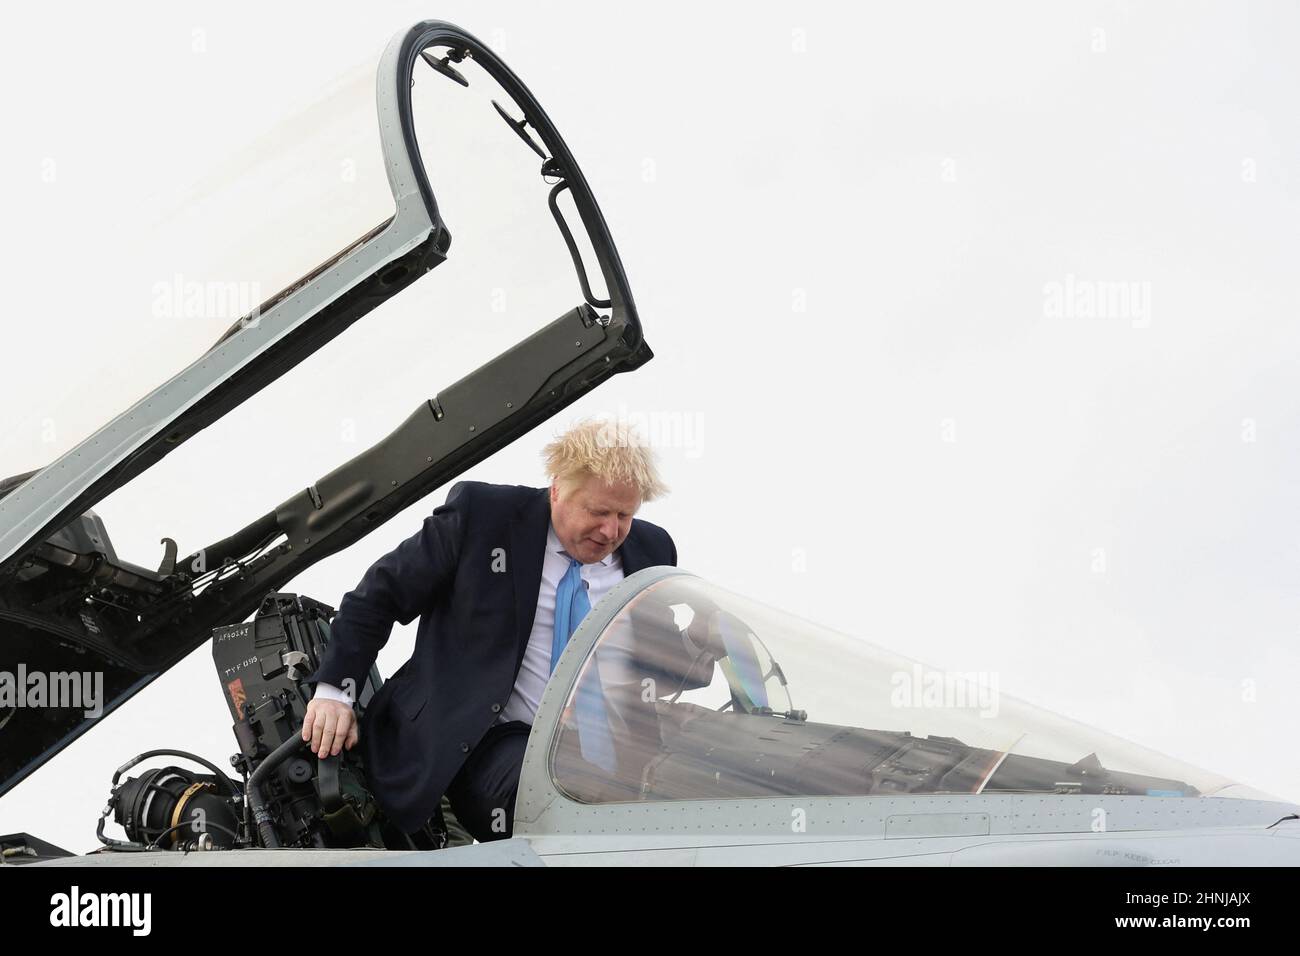 Il primo Ministro Boris Johnson sale in aereo militare durante la sua visita alla Royal Air Force Station di Waddington nel Lincolnshire dove ha incontrato personale militare. Data immagine: Giovedì 17 febbraio 2022. Foto Stock